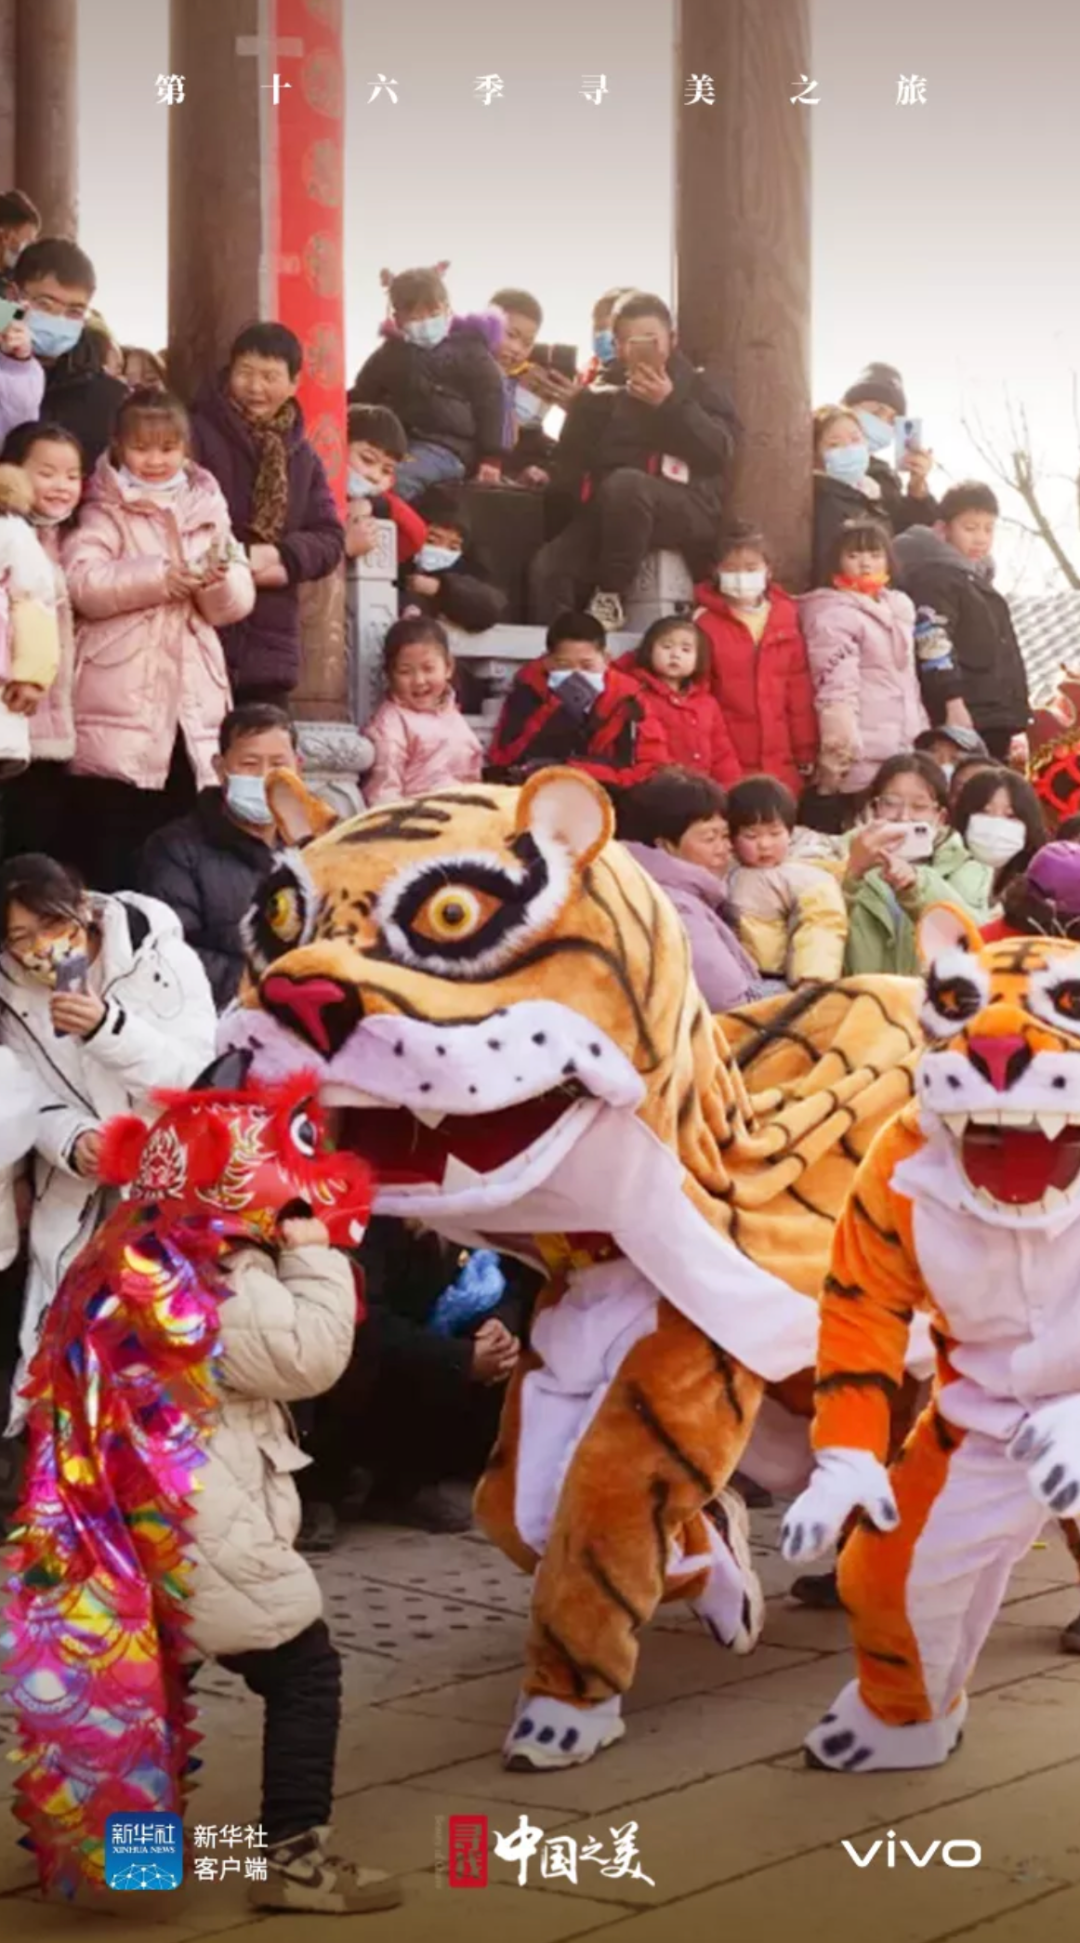 在“幸福中国年”的影像中，发现vivo的“人文之悦”